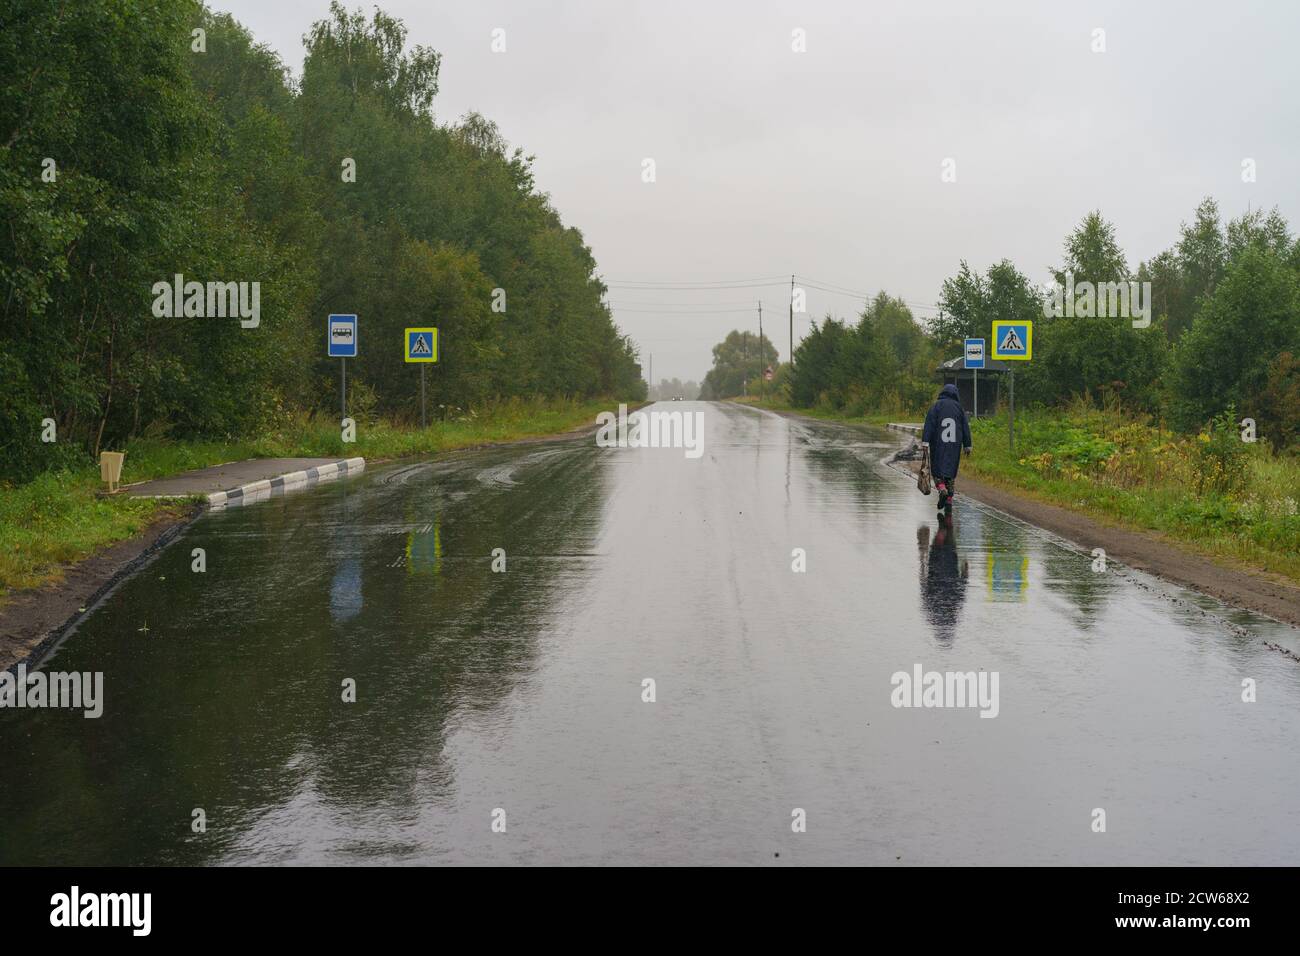 Der Herbst kommt in die russische Landschaft. Nasse Straße tagsüber. Kalte Dusche. Einsame Frau zog Regenmantel an, um zur Bushaltestelle zu laufen. Inlandstourismus Stockfoto